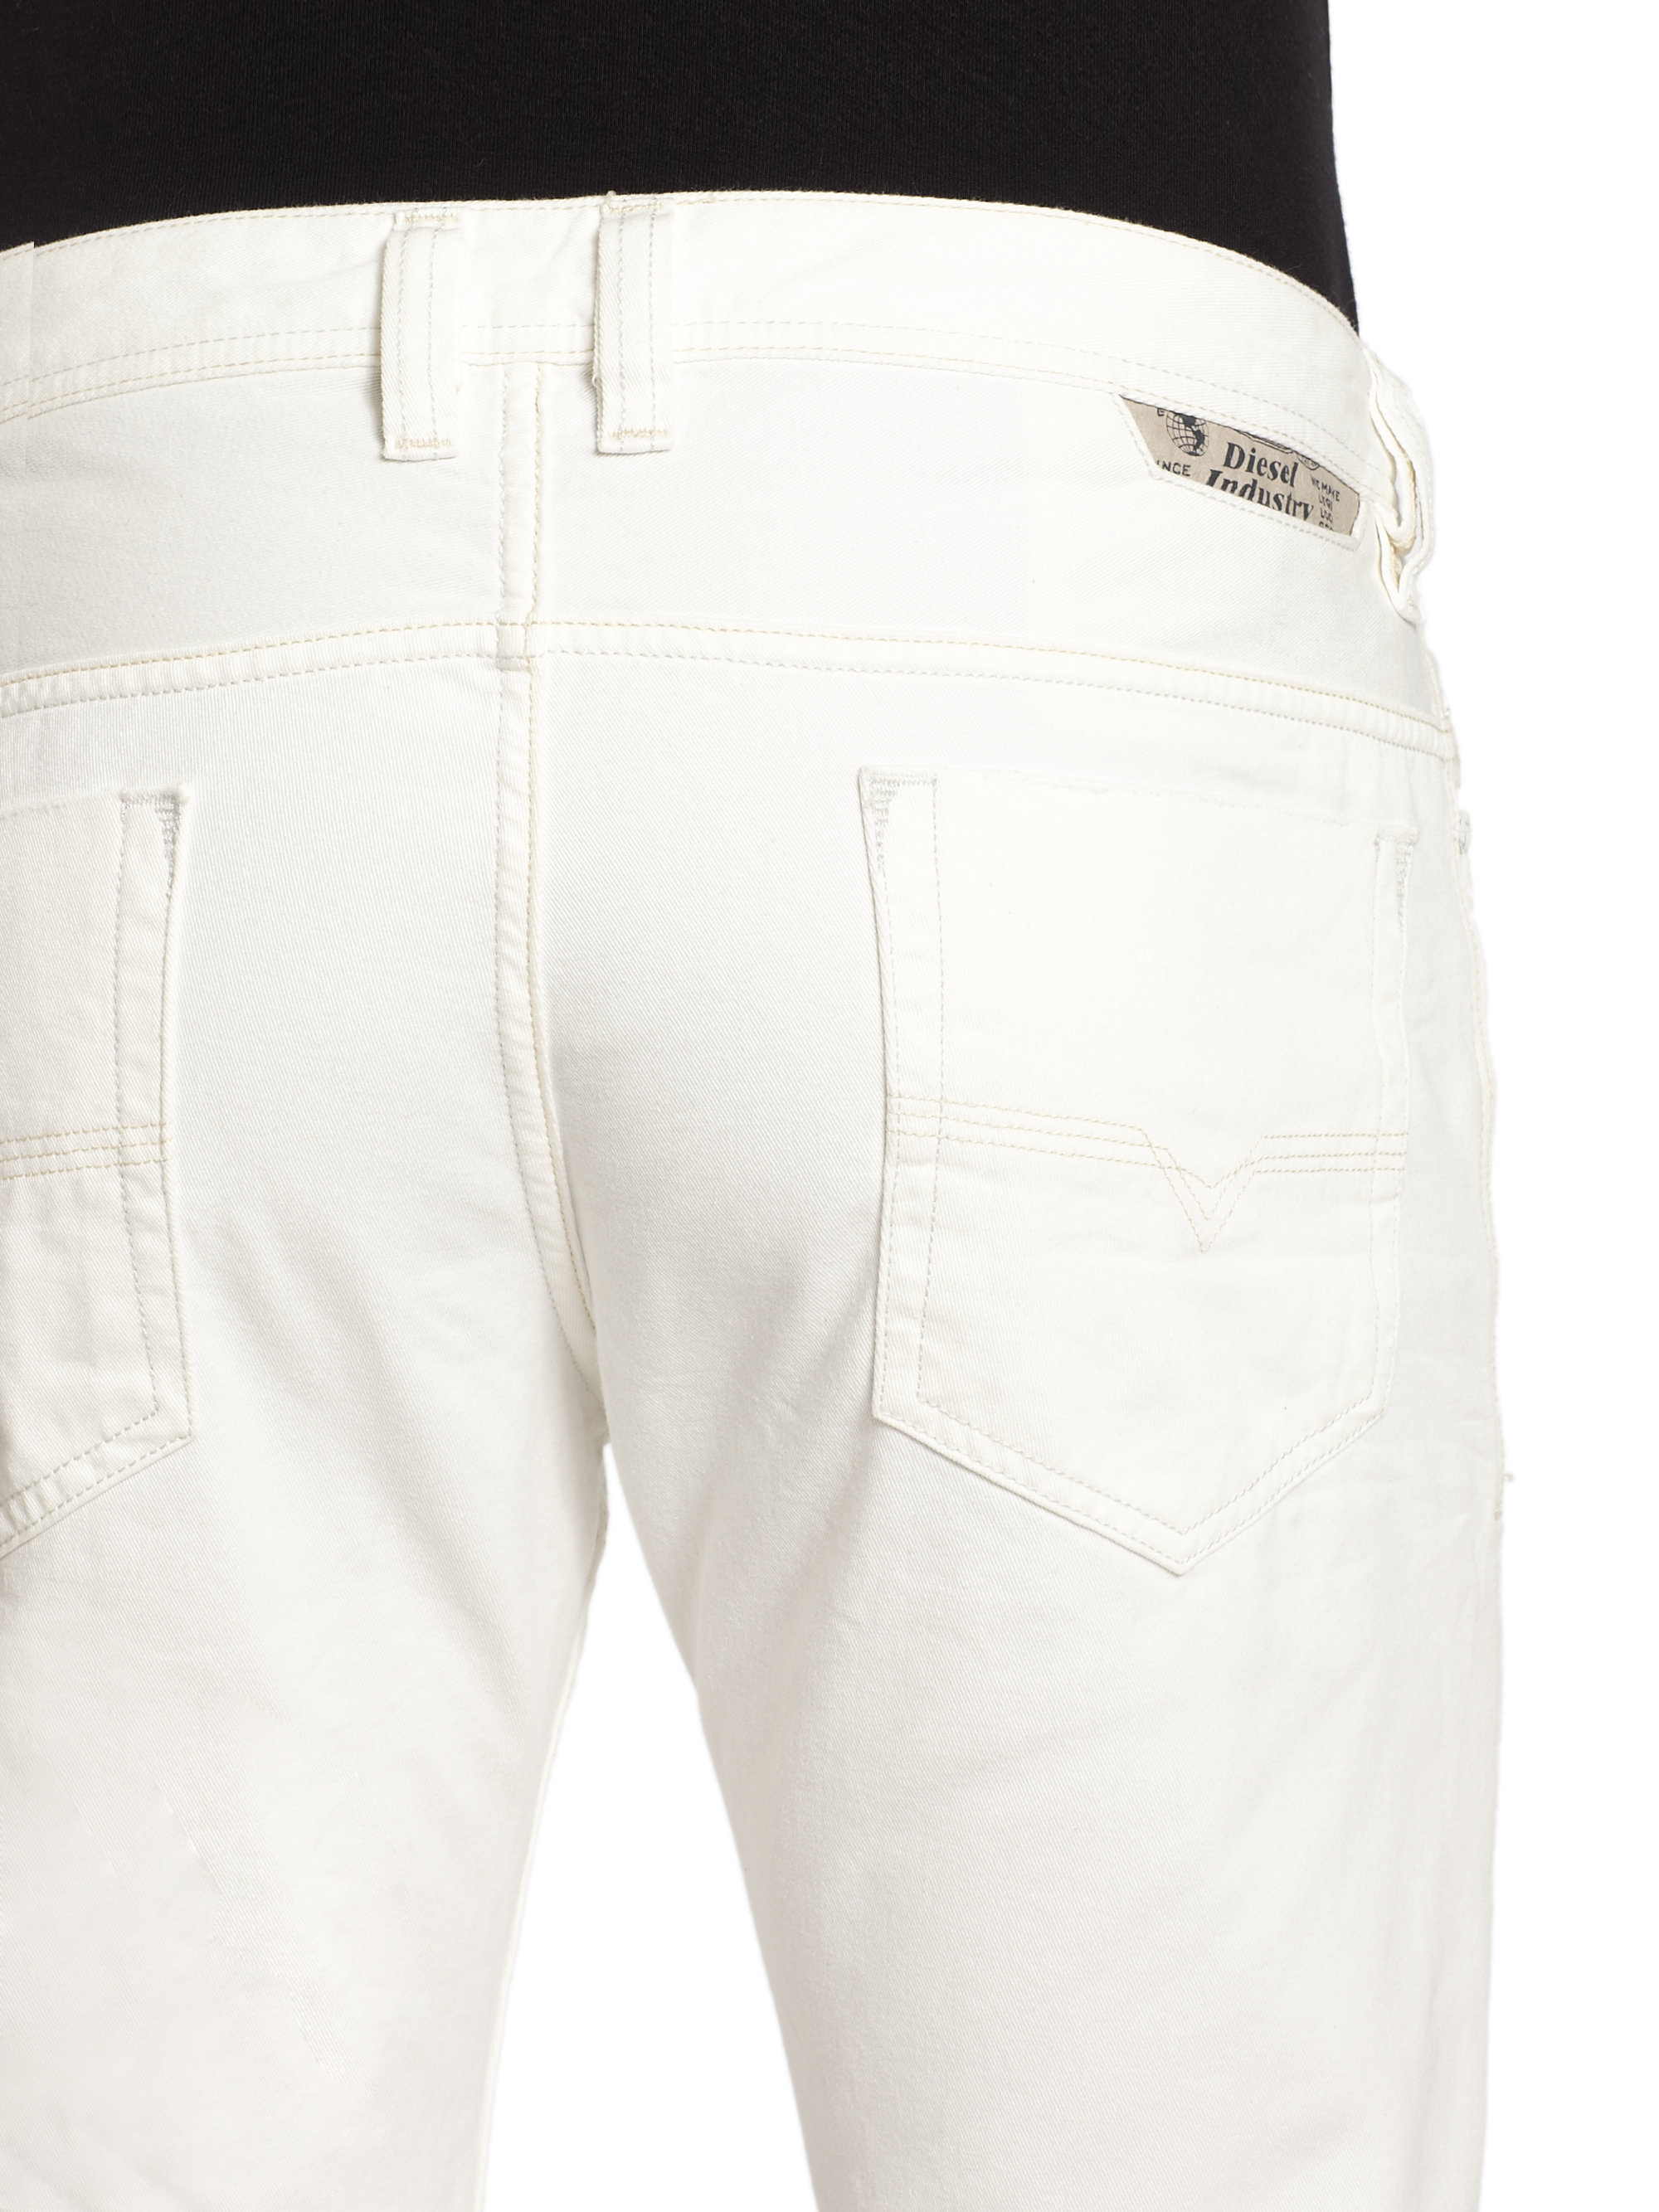 DIESEL Safado White Jeans for Men